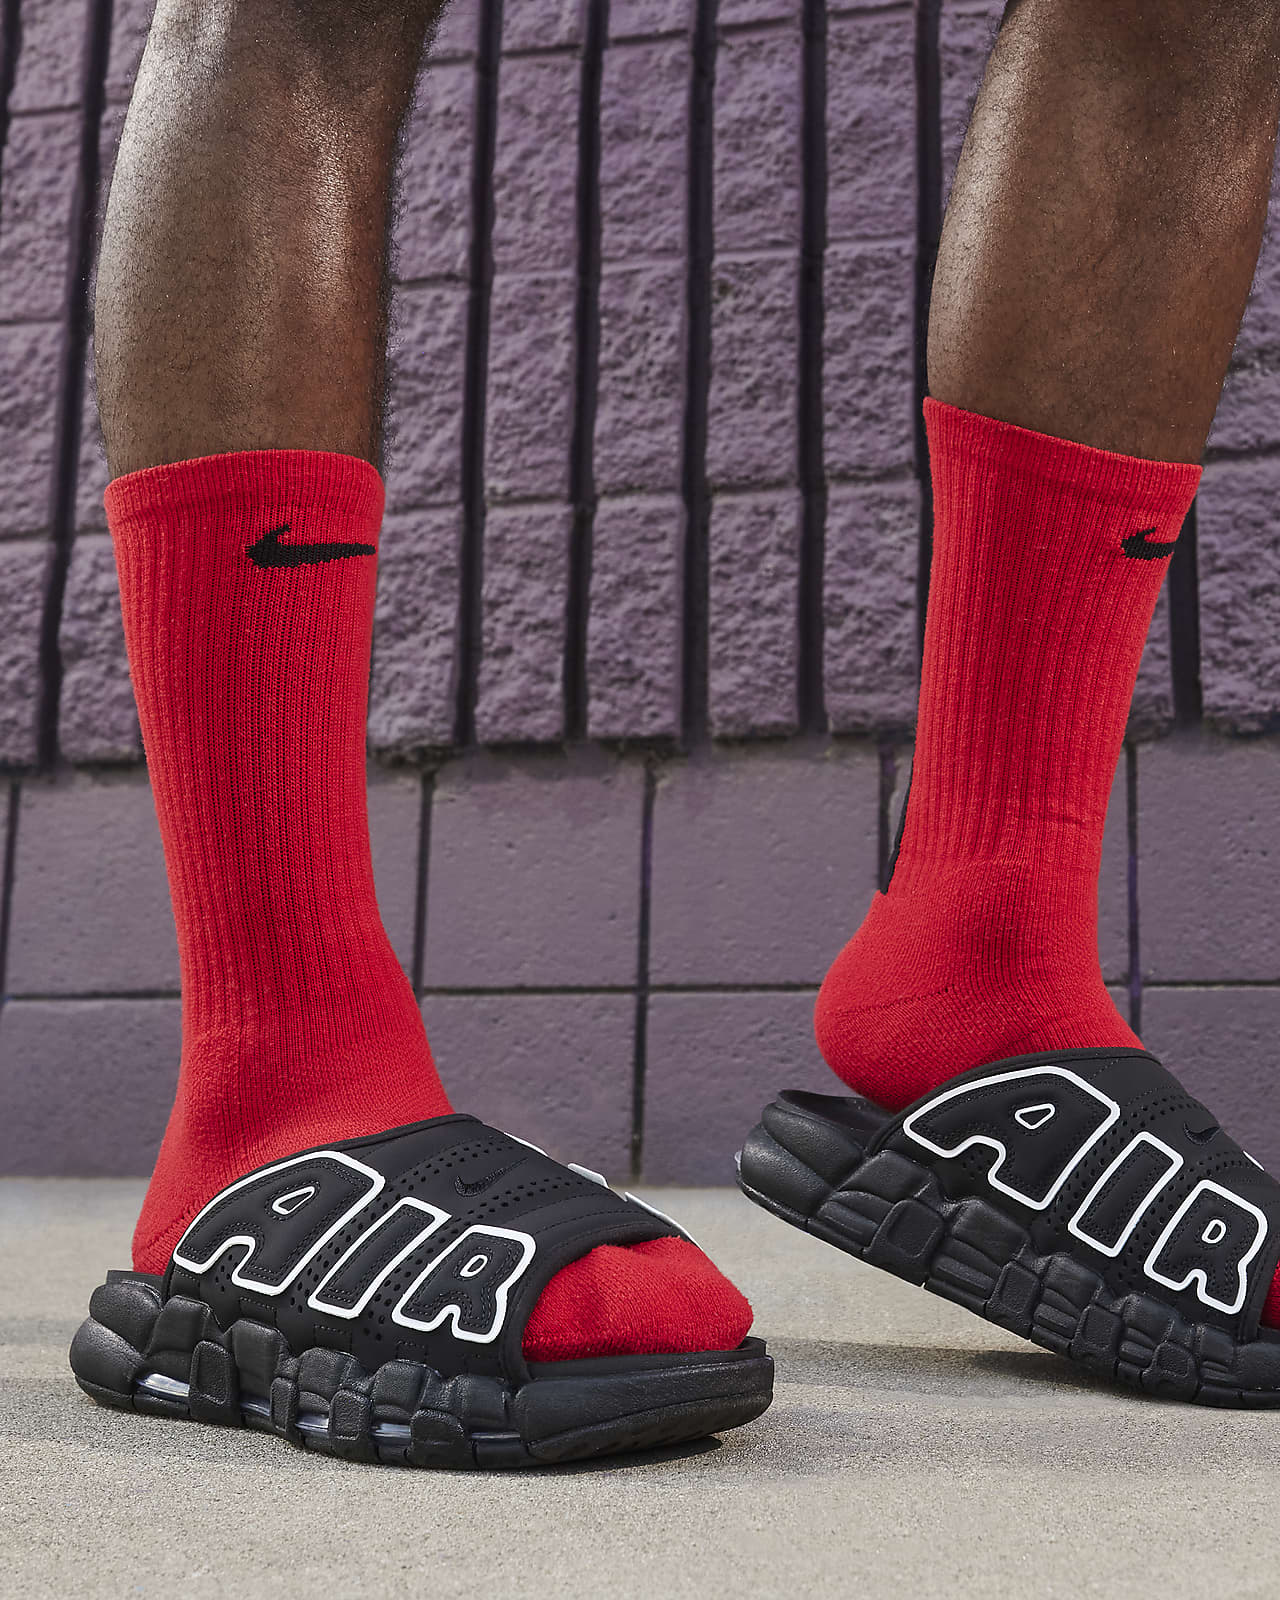 Nike Air More Uptempo Men's Slides